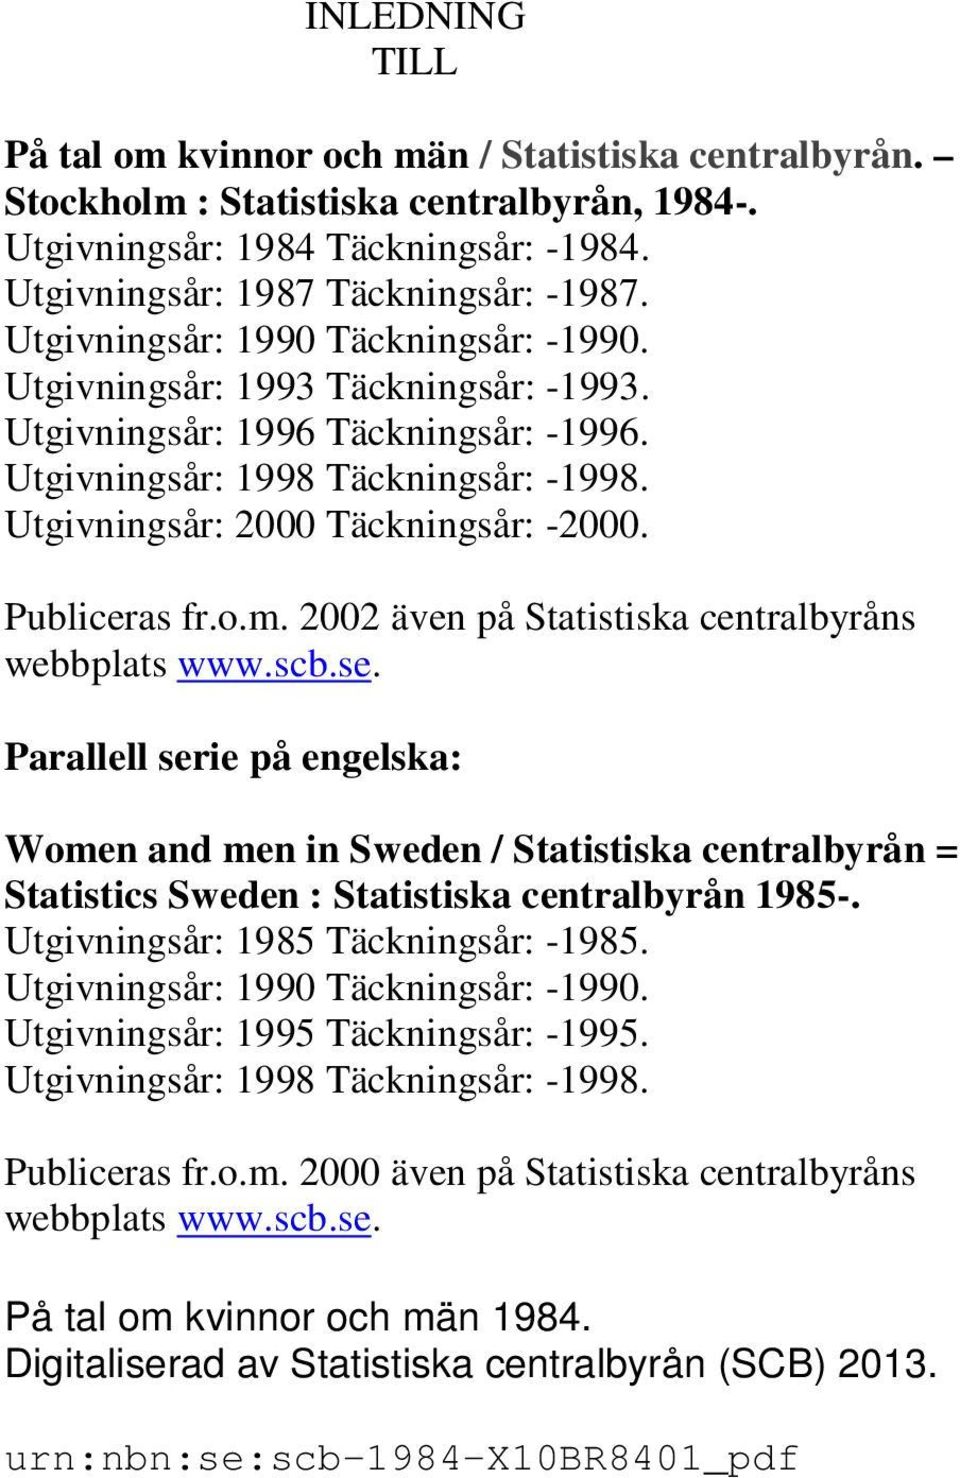 Publiceras fr.o.m. 2002 även på Statistiska centralbyråns webbplats www.scb.se.